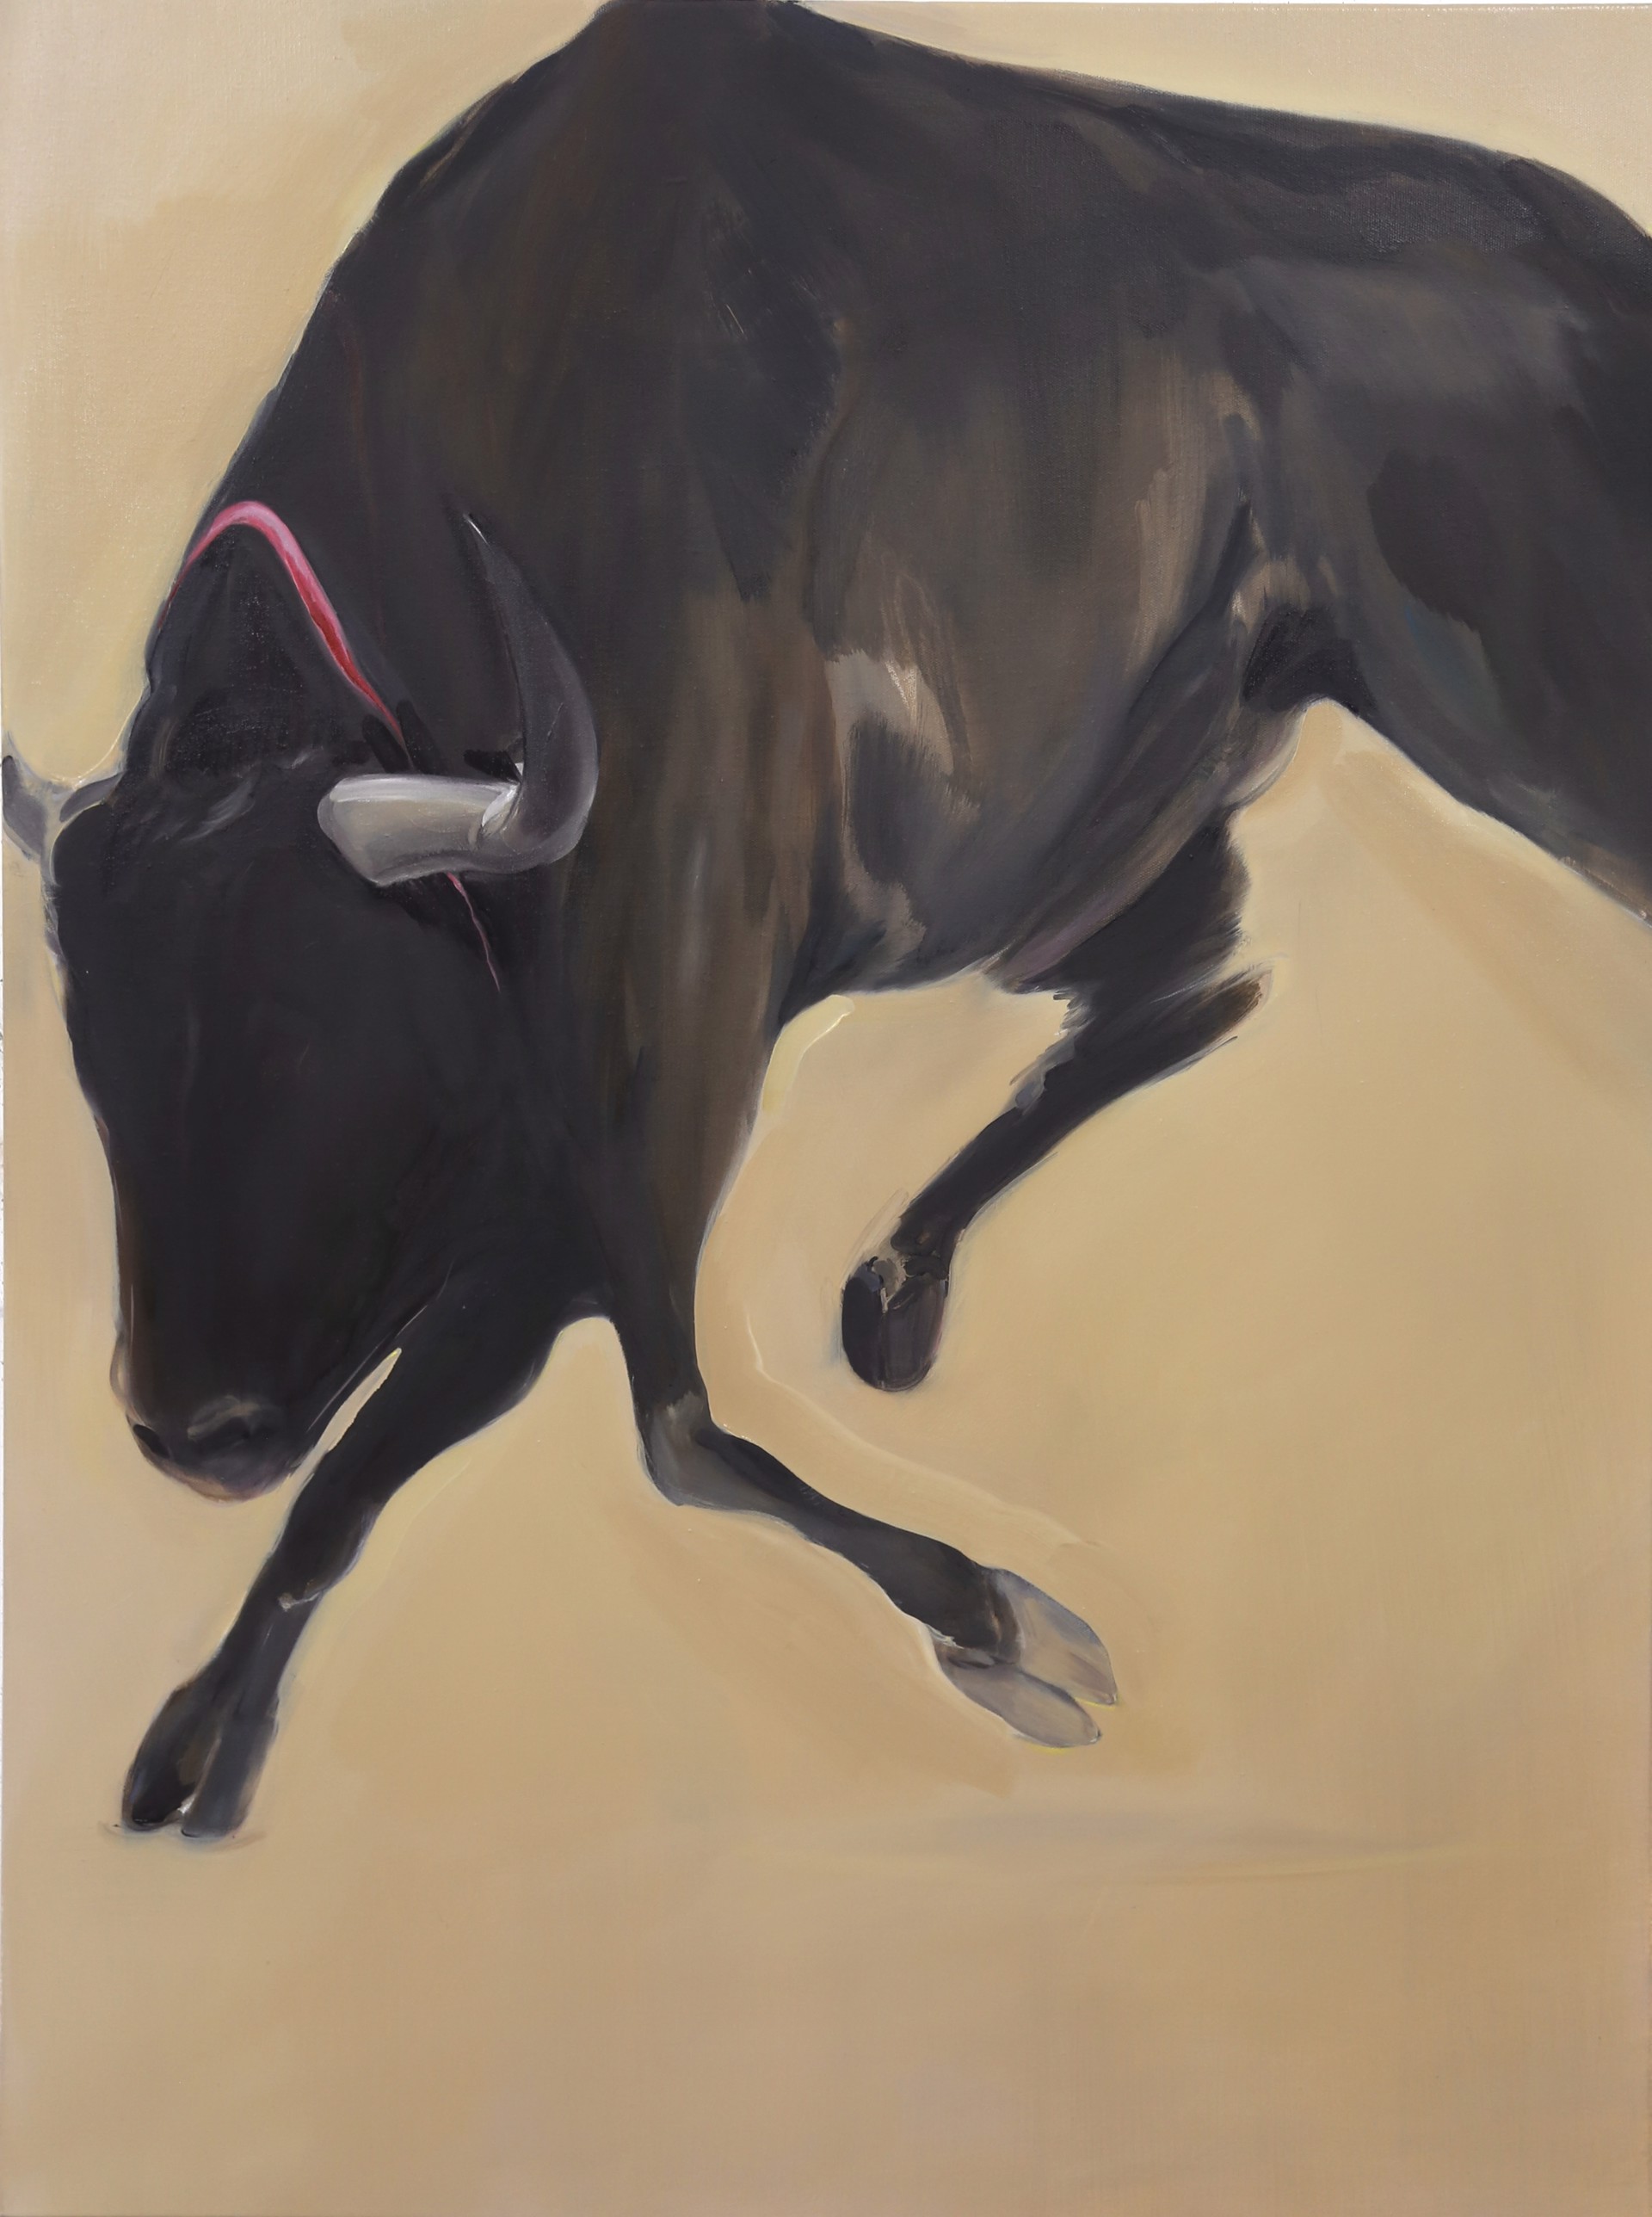 Raging bull by Tianyi Liu